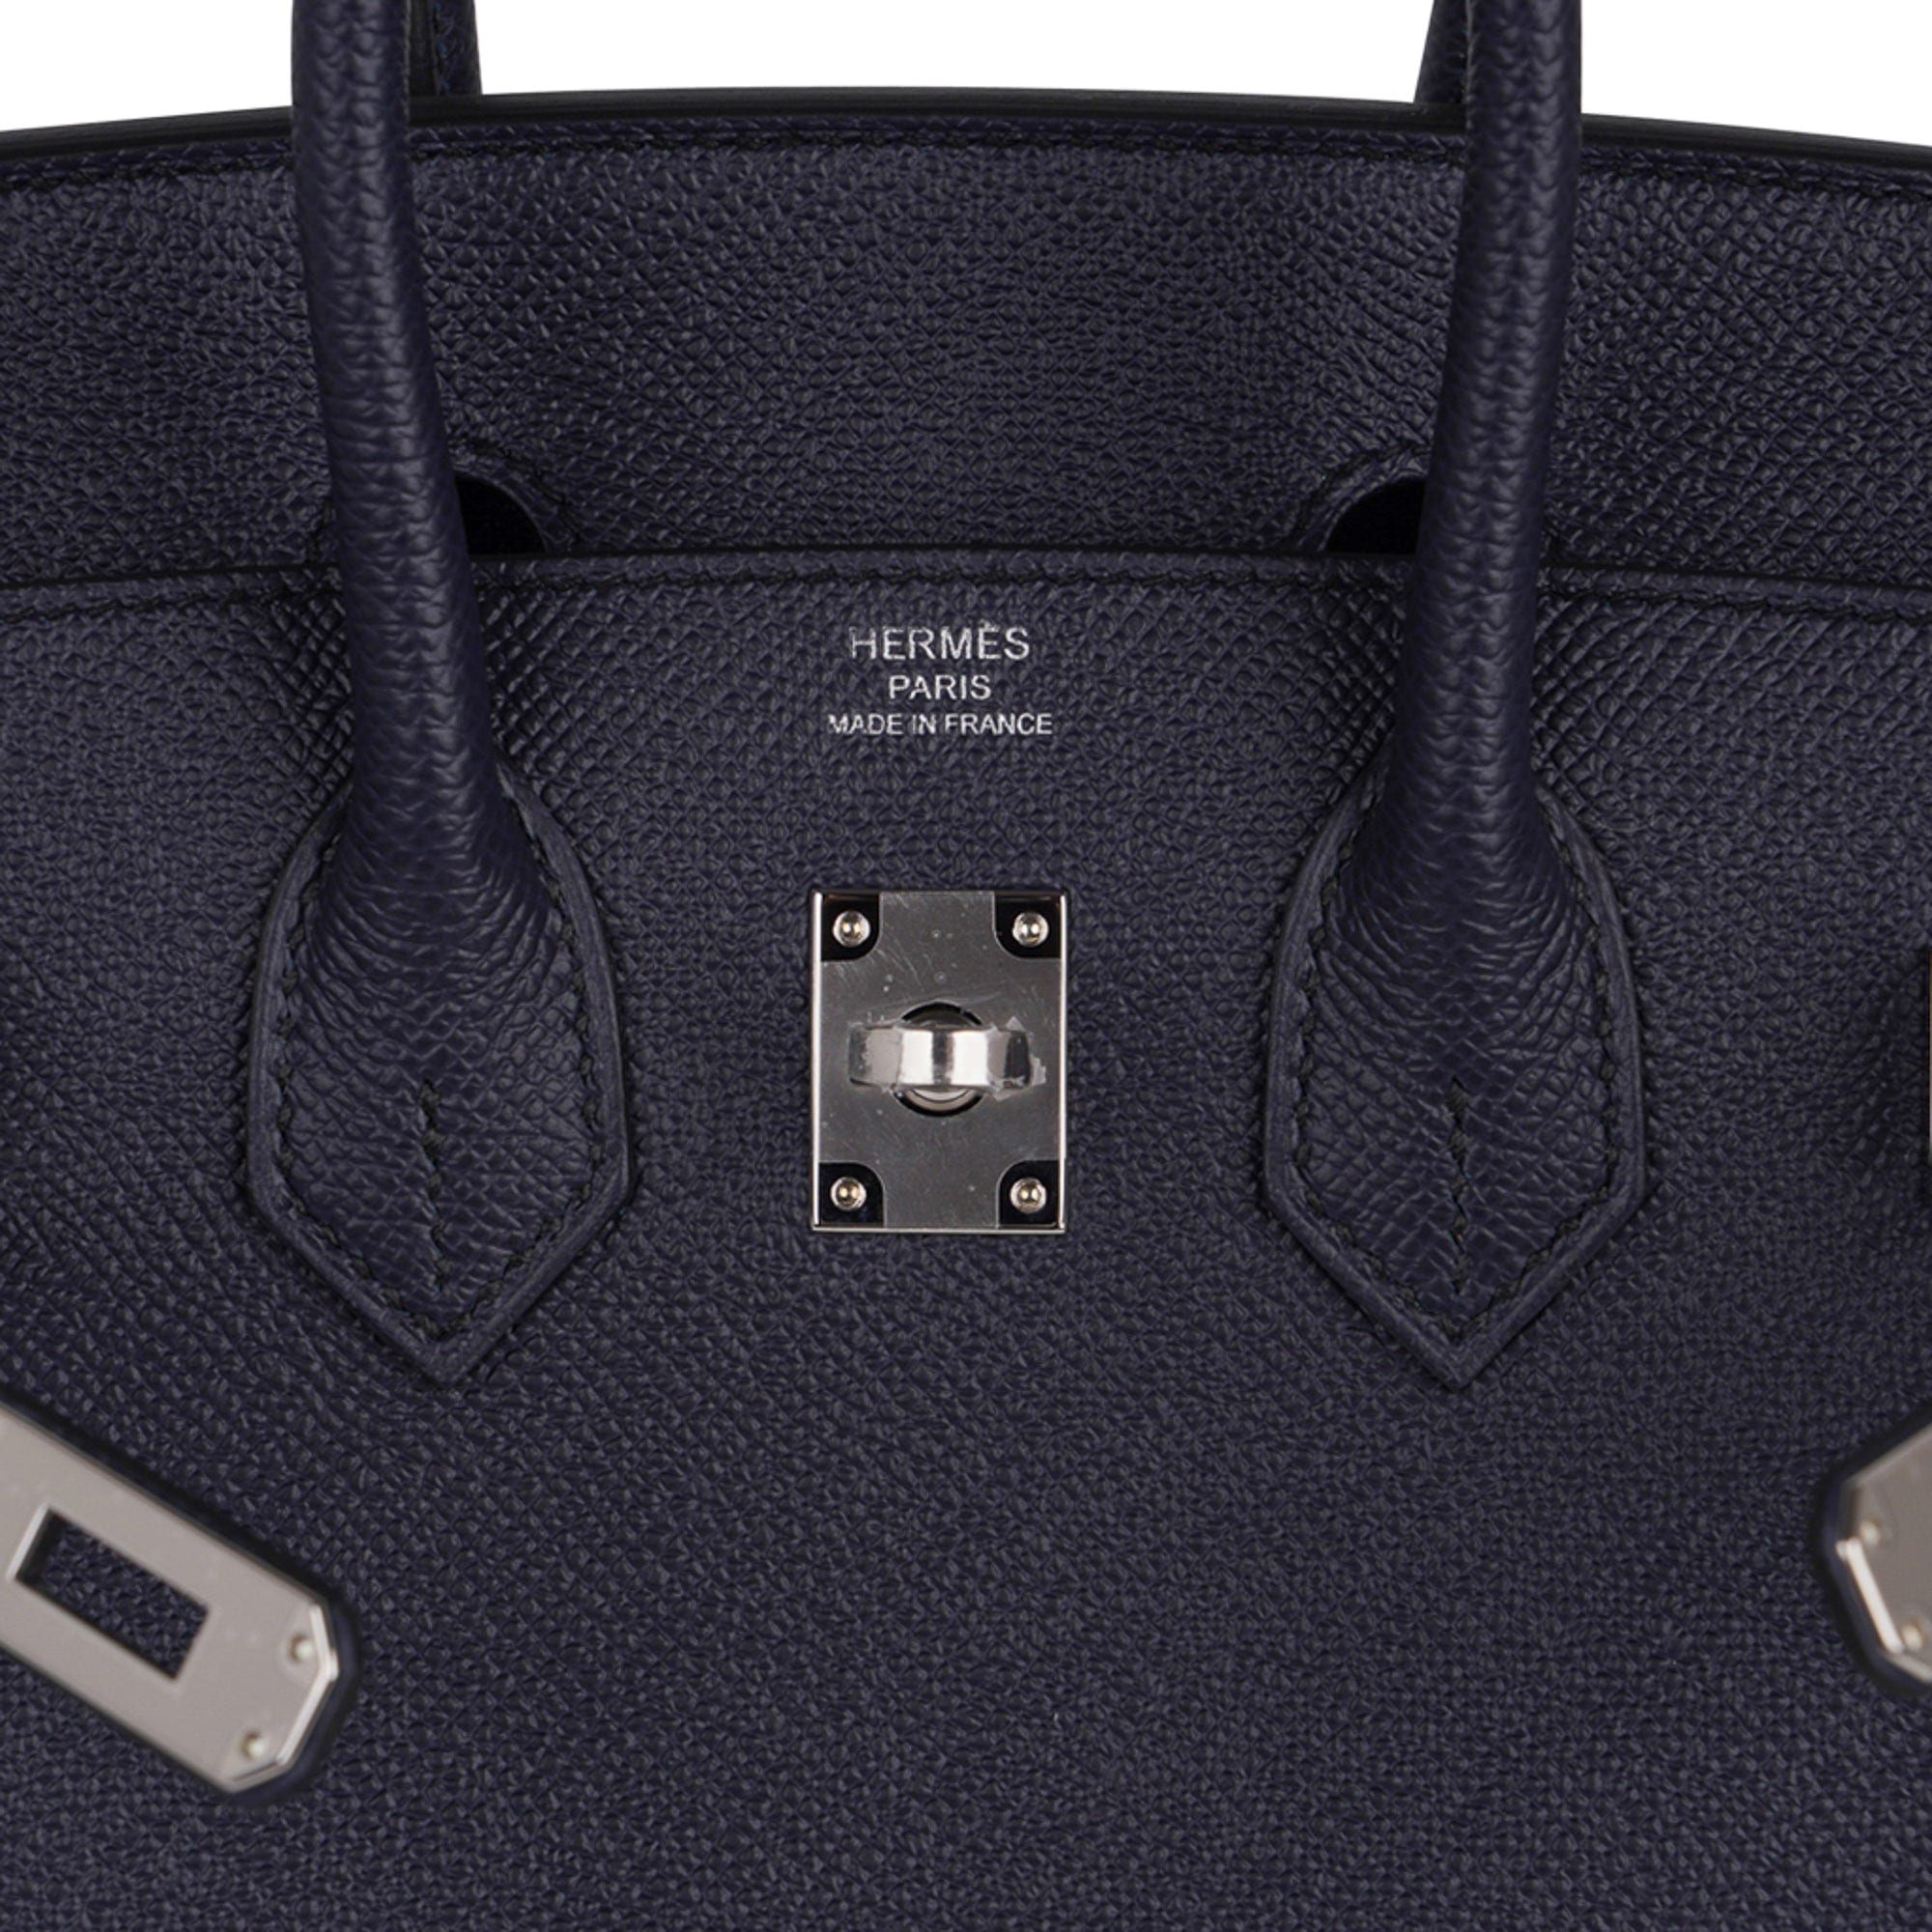 Hermes Birkin bag 25 Blue nuit Togo leather Gold hardware